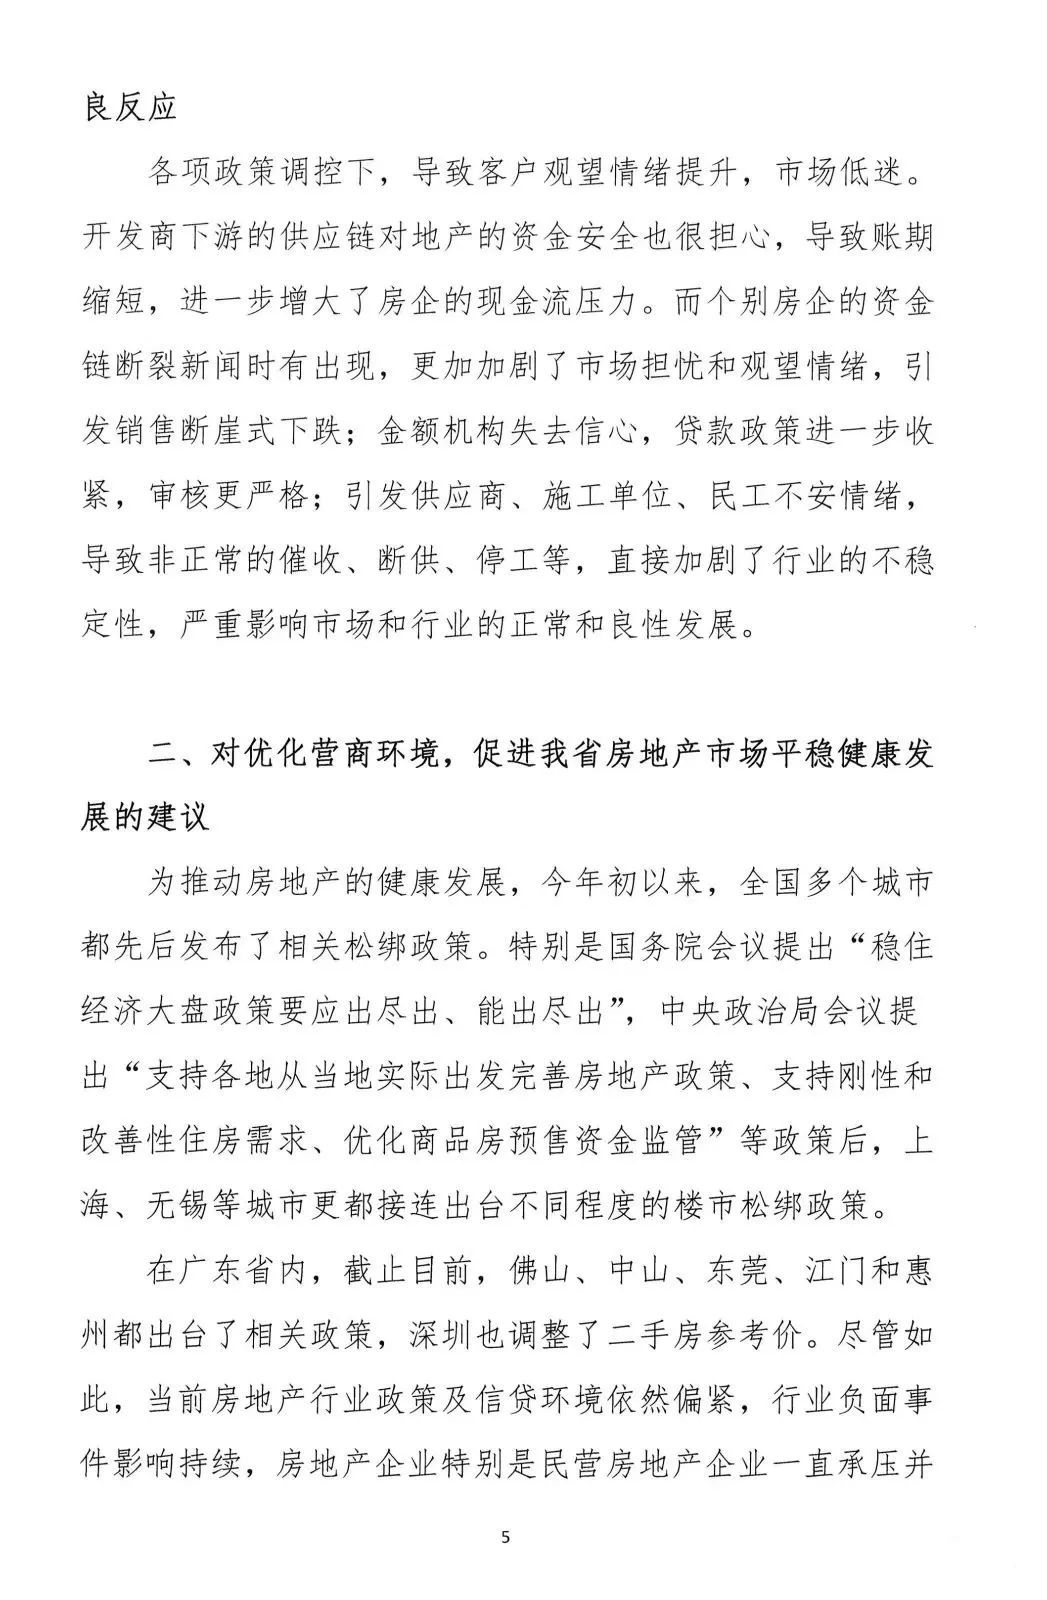 2022年6月6日，广东省地产商会向省住建厅递交了一份文件《关于促进房地产业平稳健康发展的意见和建议》粵地会〔2021〕1号。5.png